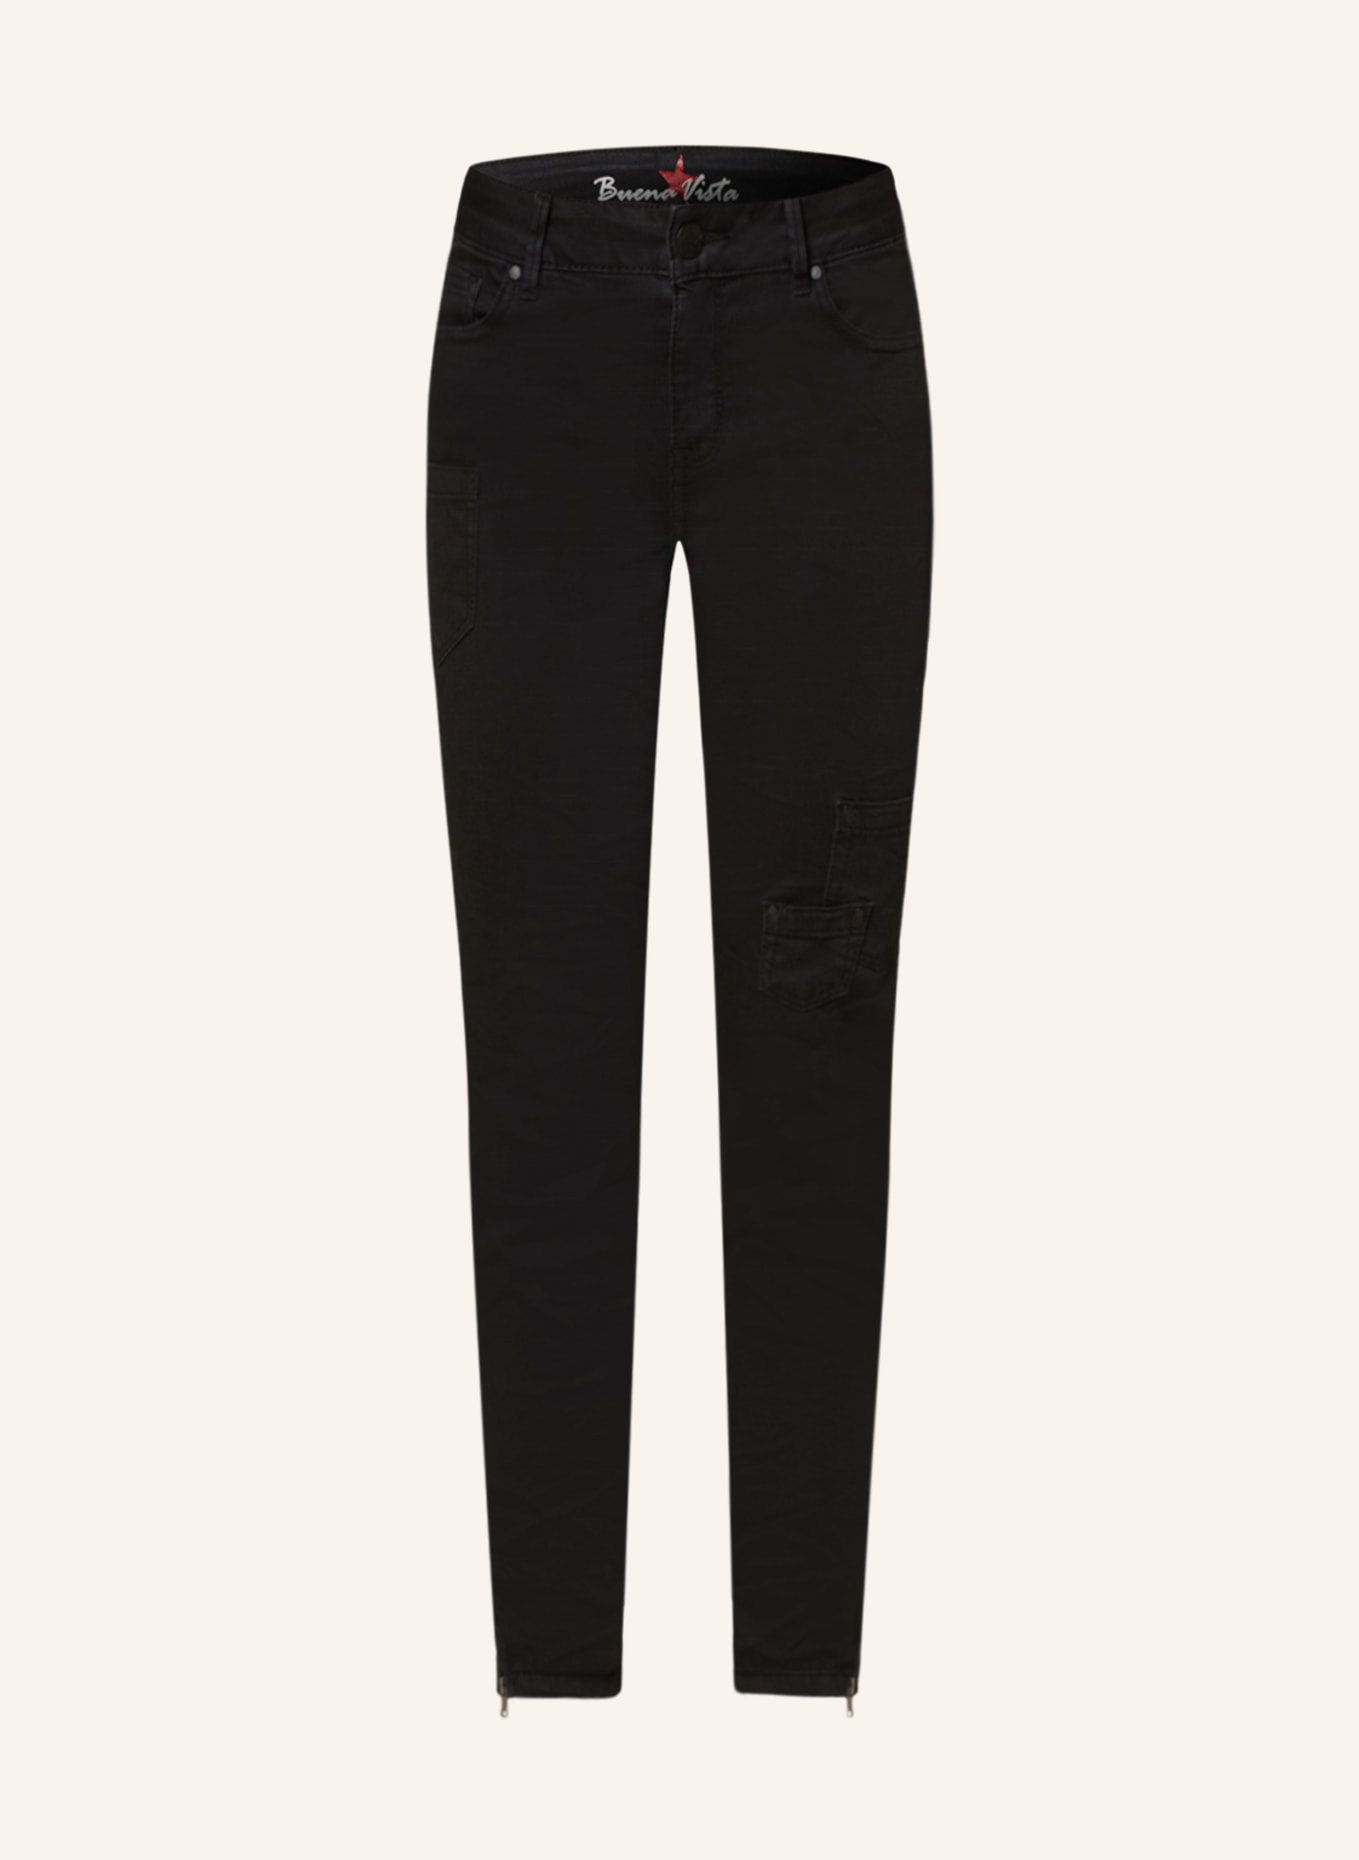 Buena Vista 7/8 jeans, Color: 014 BLACK (Image 1)